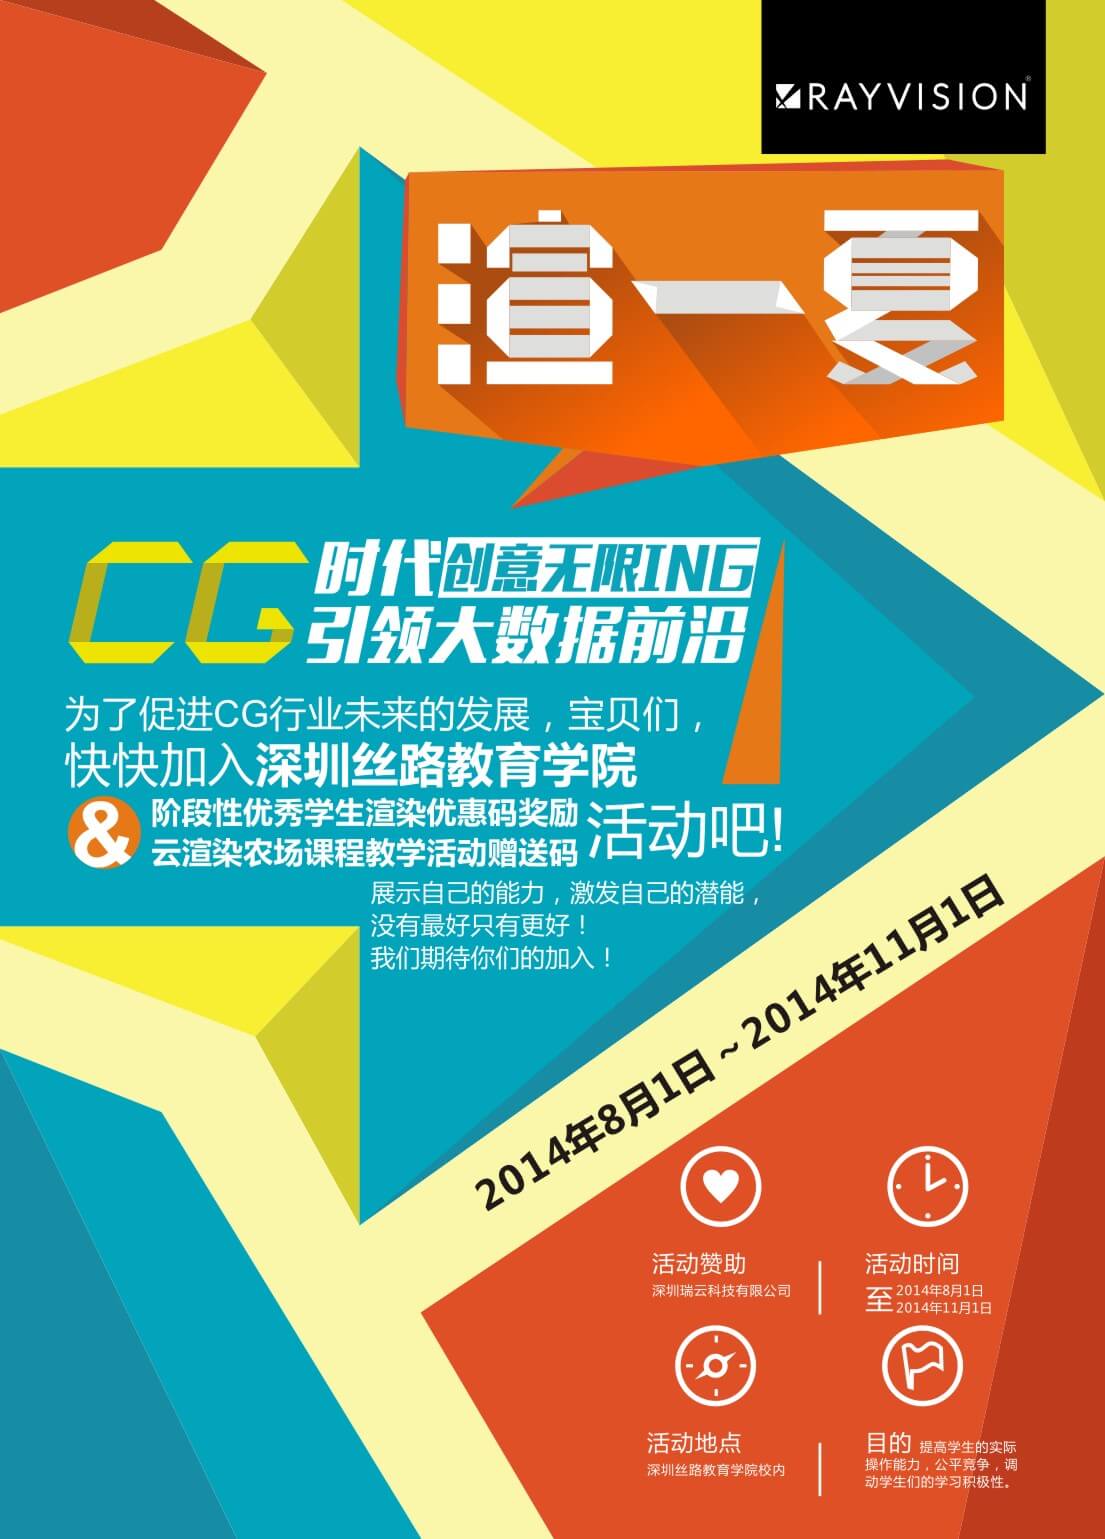 2014深圳瑞云科技协同丝路教育学院“渲一夏”CG人才培育赞助活动即将启动，快来加入吧！